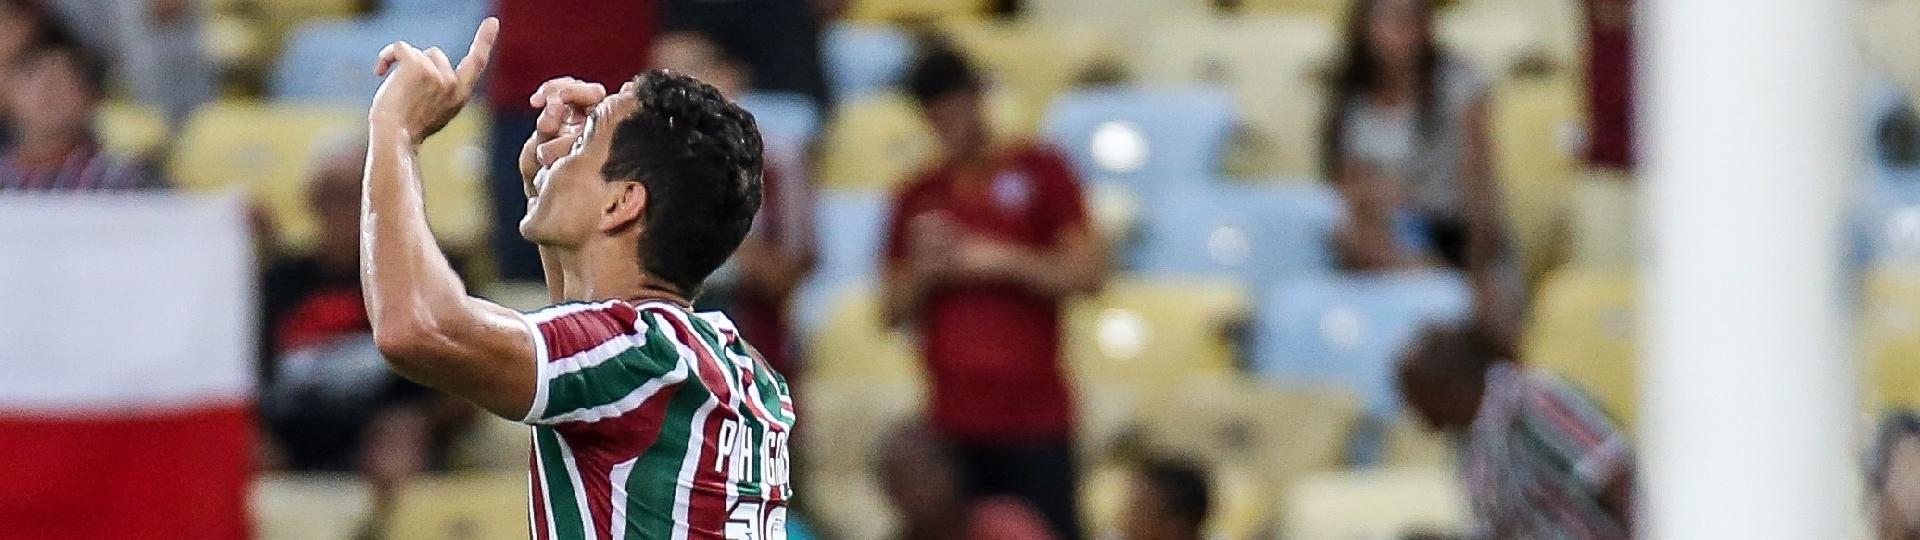 Ganso comemora seu gol para o Fluminense em jogo contra Ypiranga 